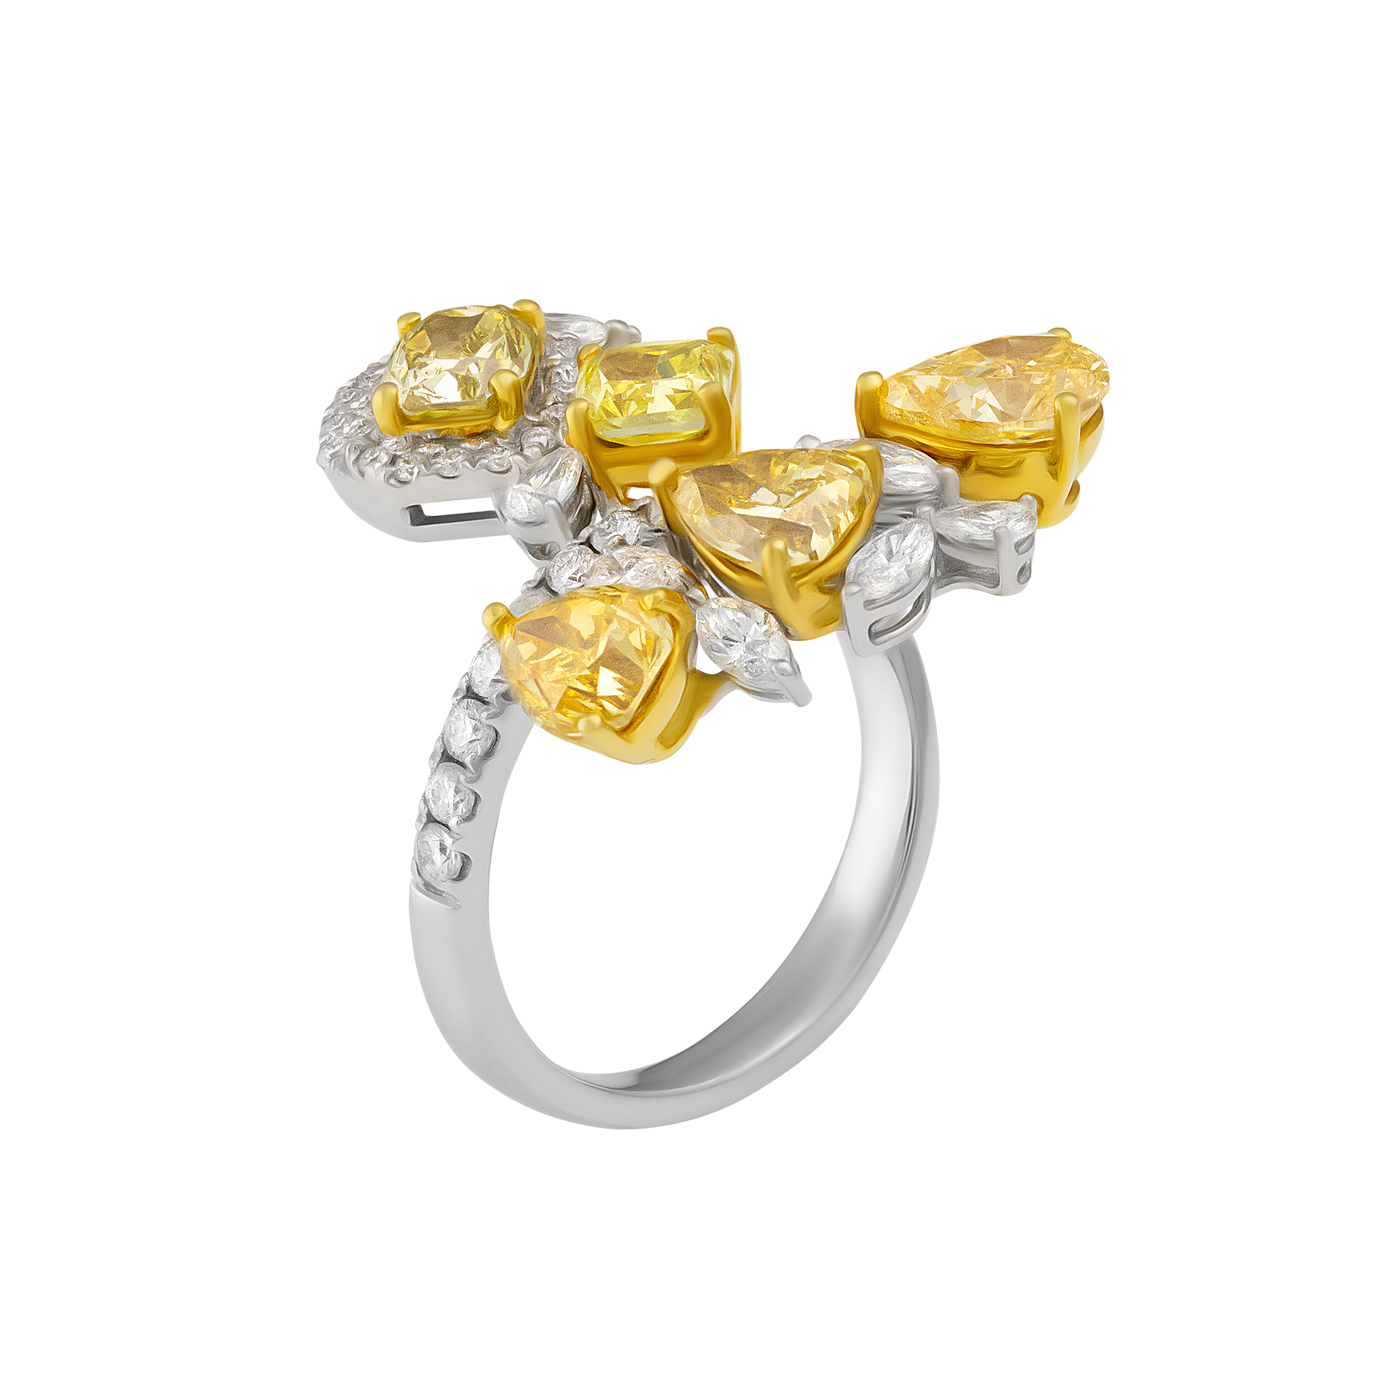 ECJ Collection 18K White Gold & 18K Yellow Gold GIA Diamond Ring